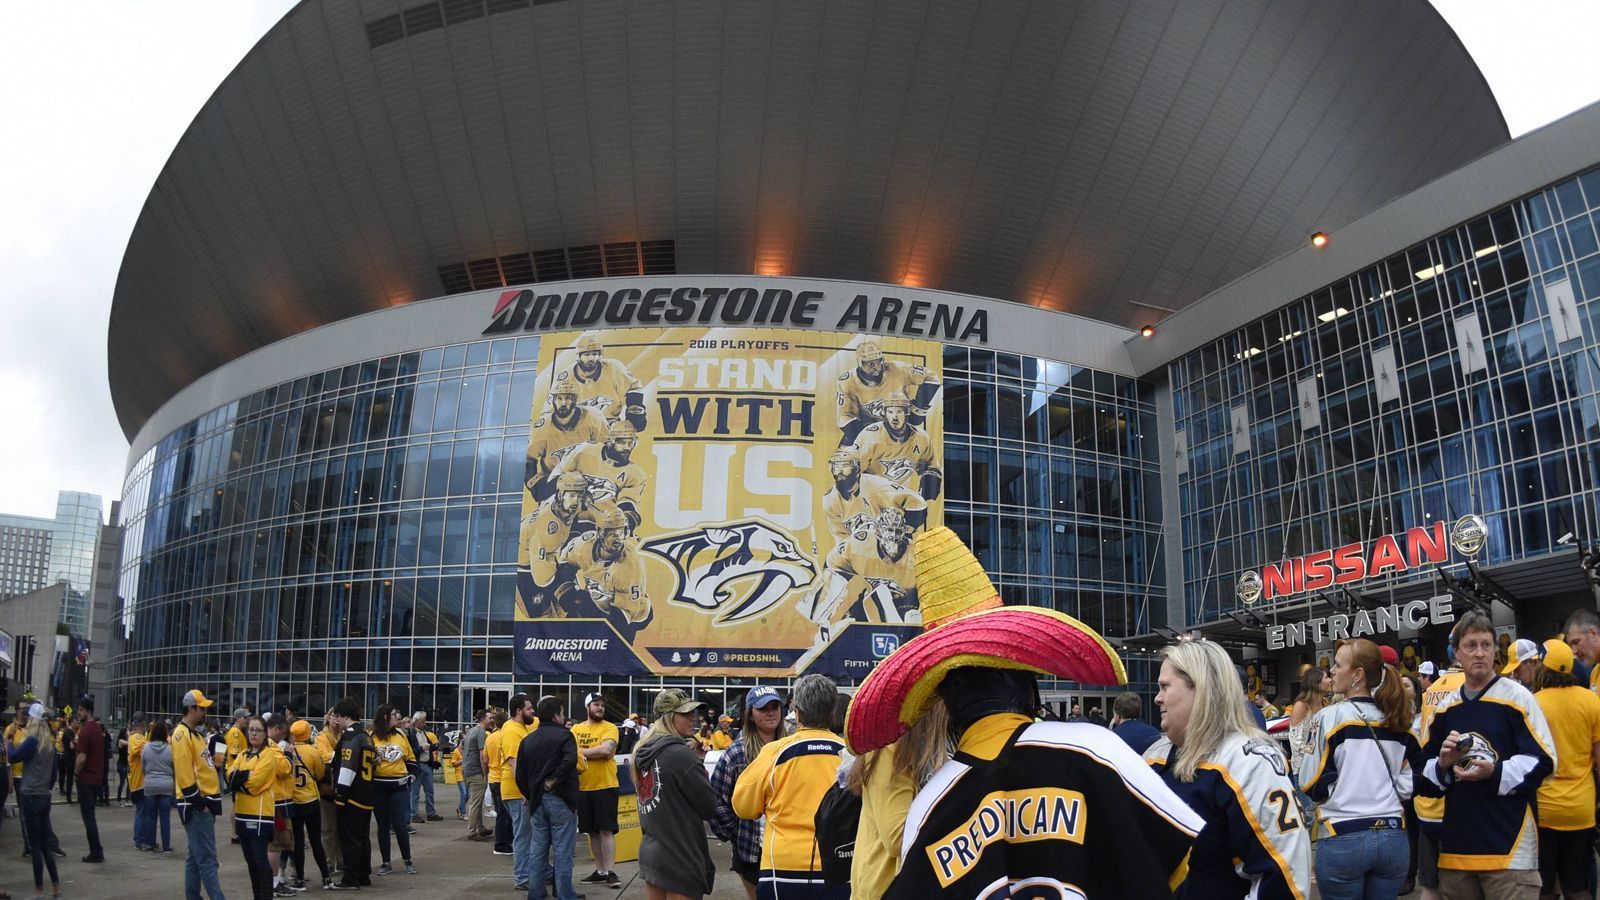 
                <strong>7. Platz: Bridgestone Arena, Nashville</strong><br>
                Heimstätte der Nashville Predators (NHL)Höchstgemessene Lautstärke: 129.4 dB
              